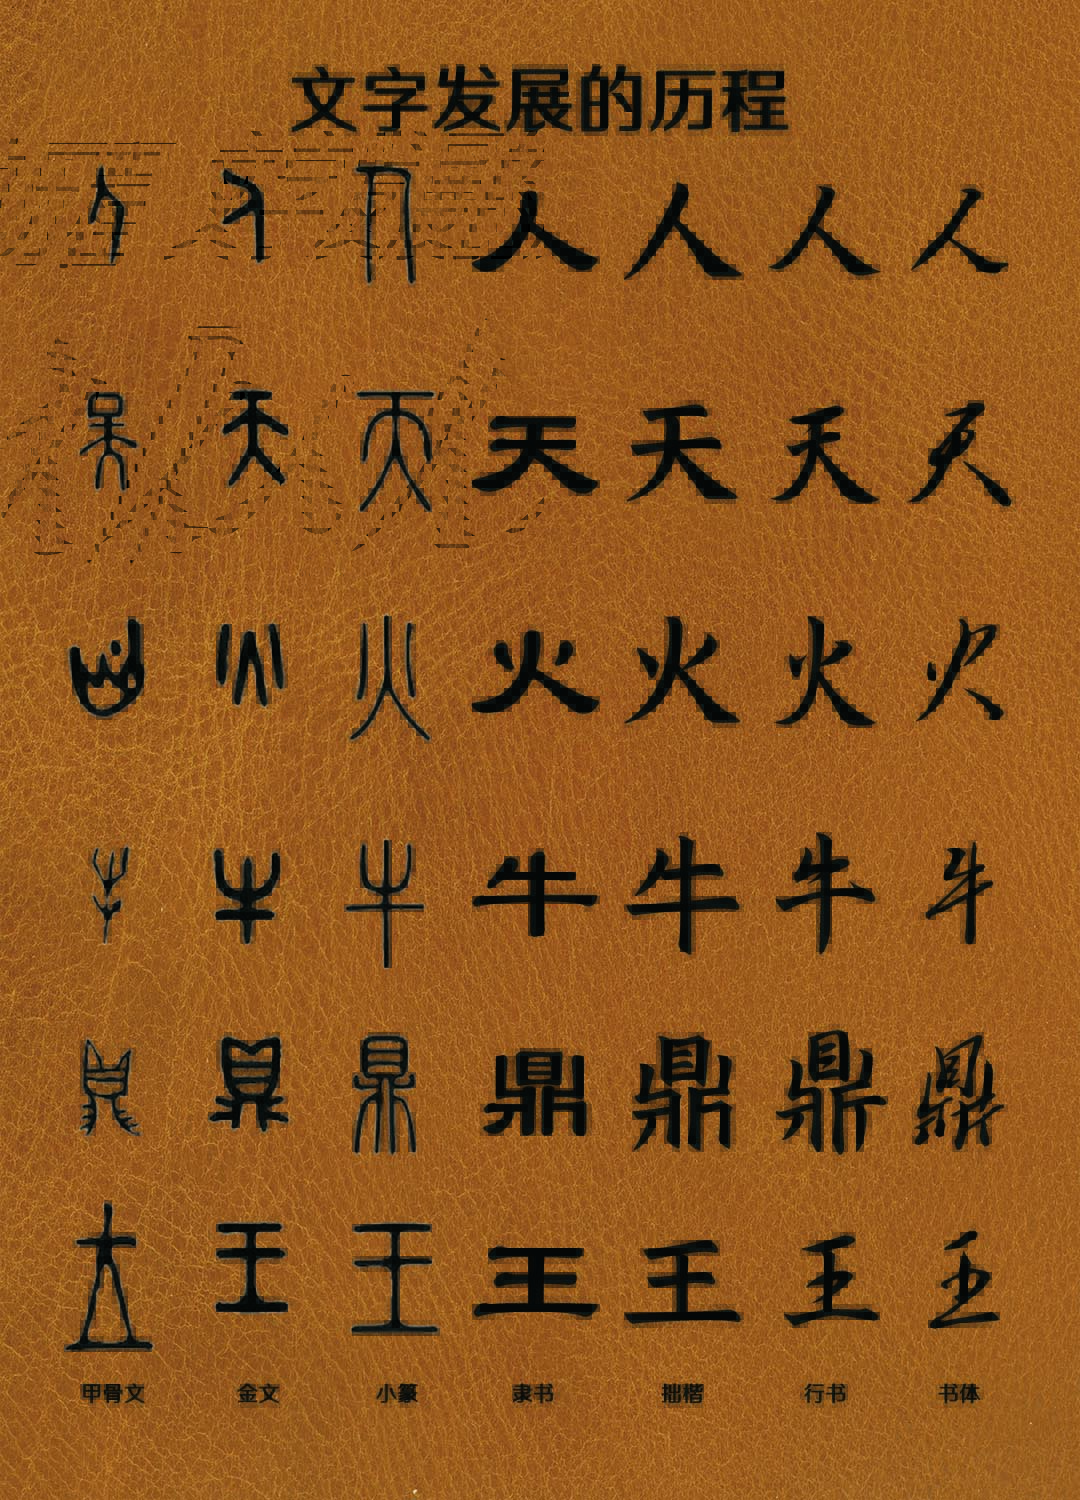 随着时代发展,每个汉字的意义在不断增加内涵在不断丰富,但其本意是